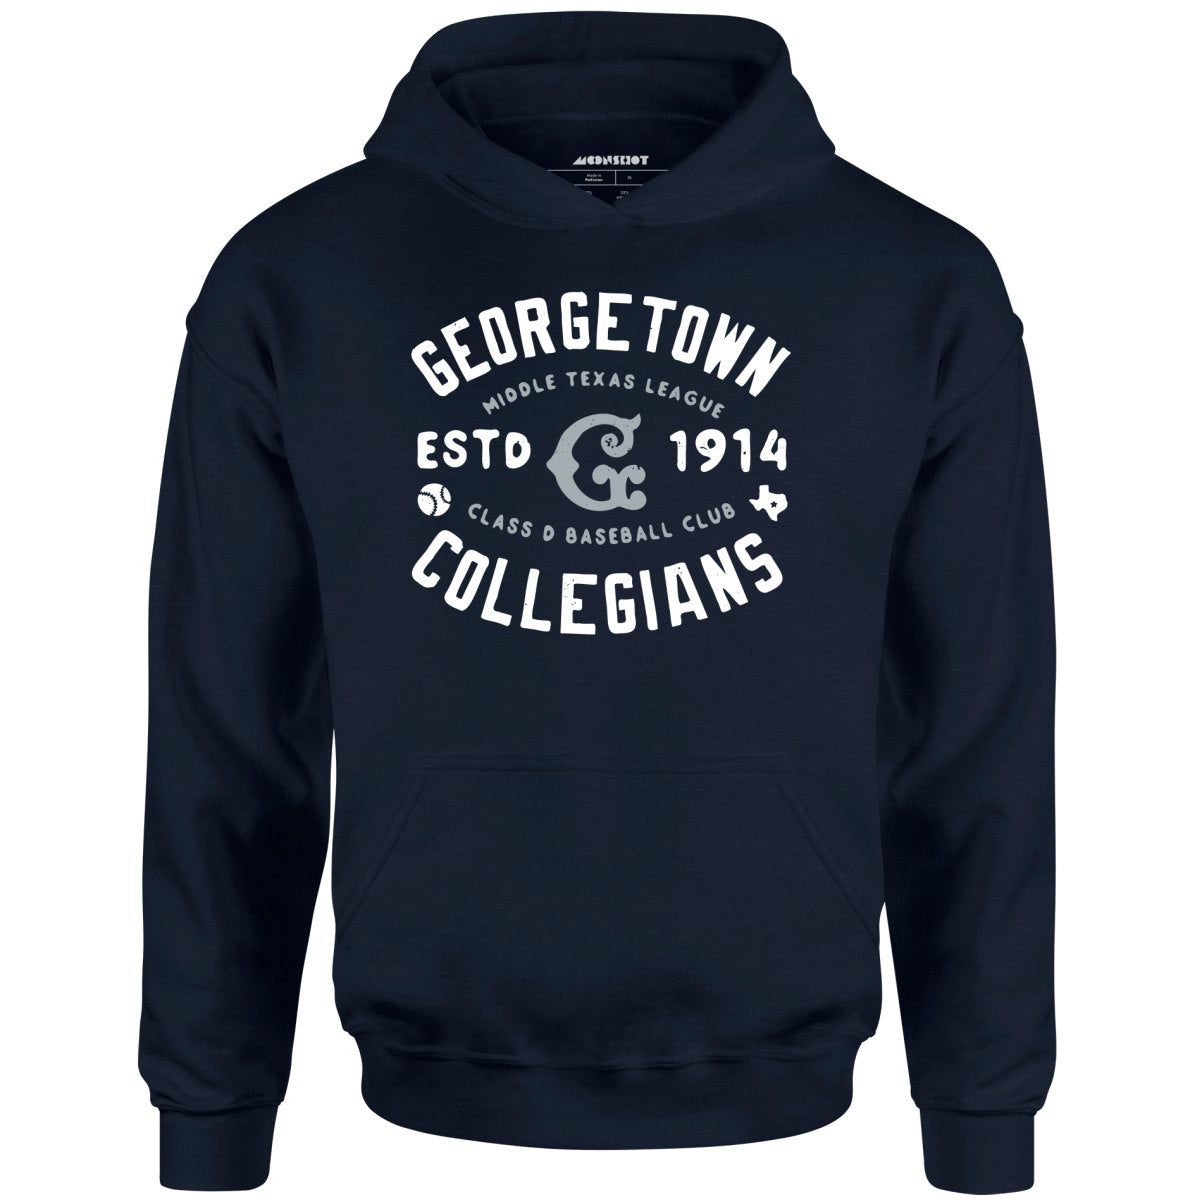 Georgetown Collegians - Texas - Vintage Defunct Baseball Teams - Unisex Hoodie